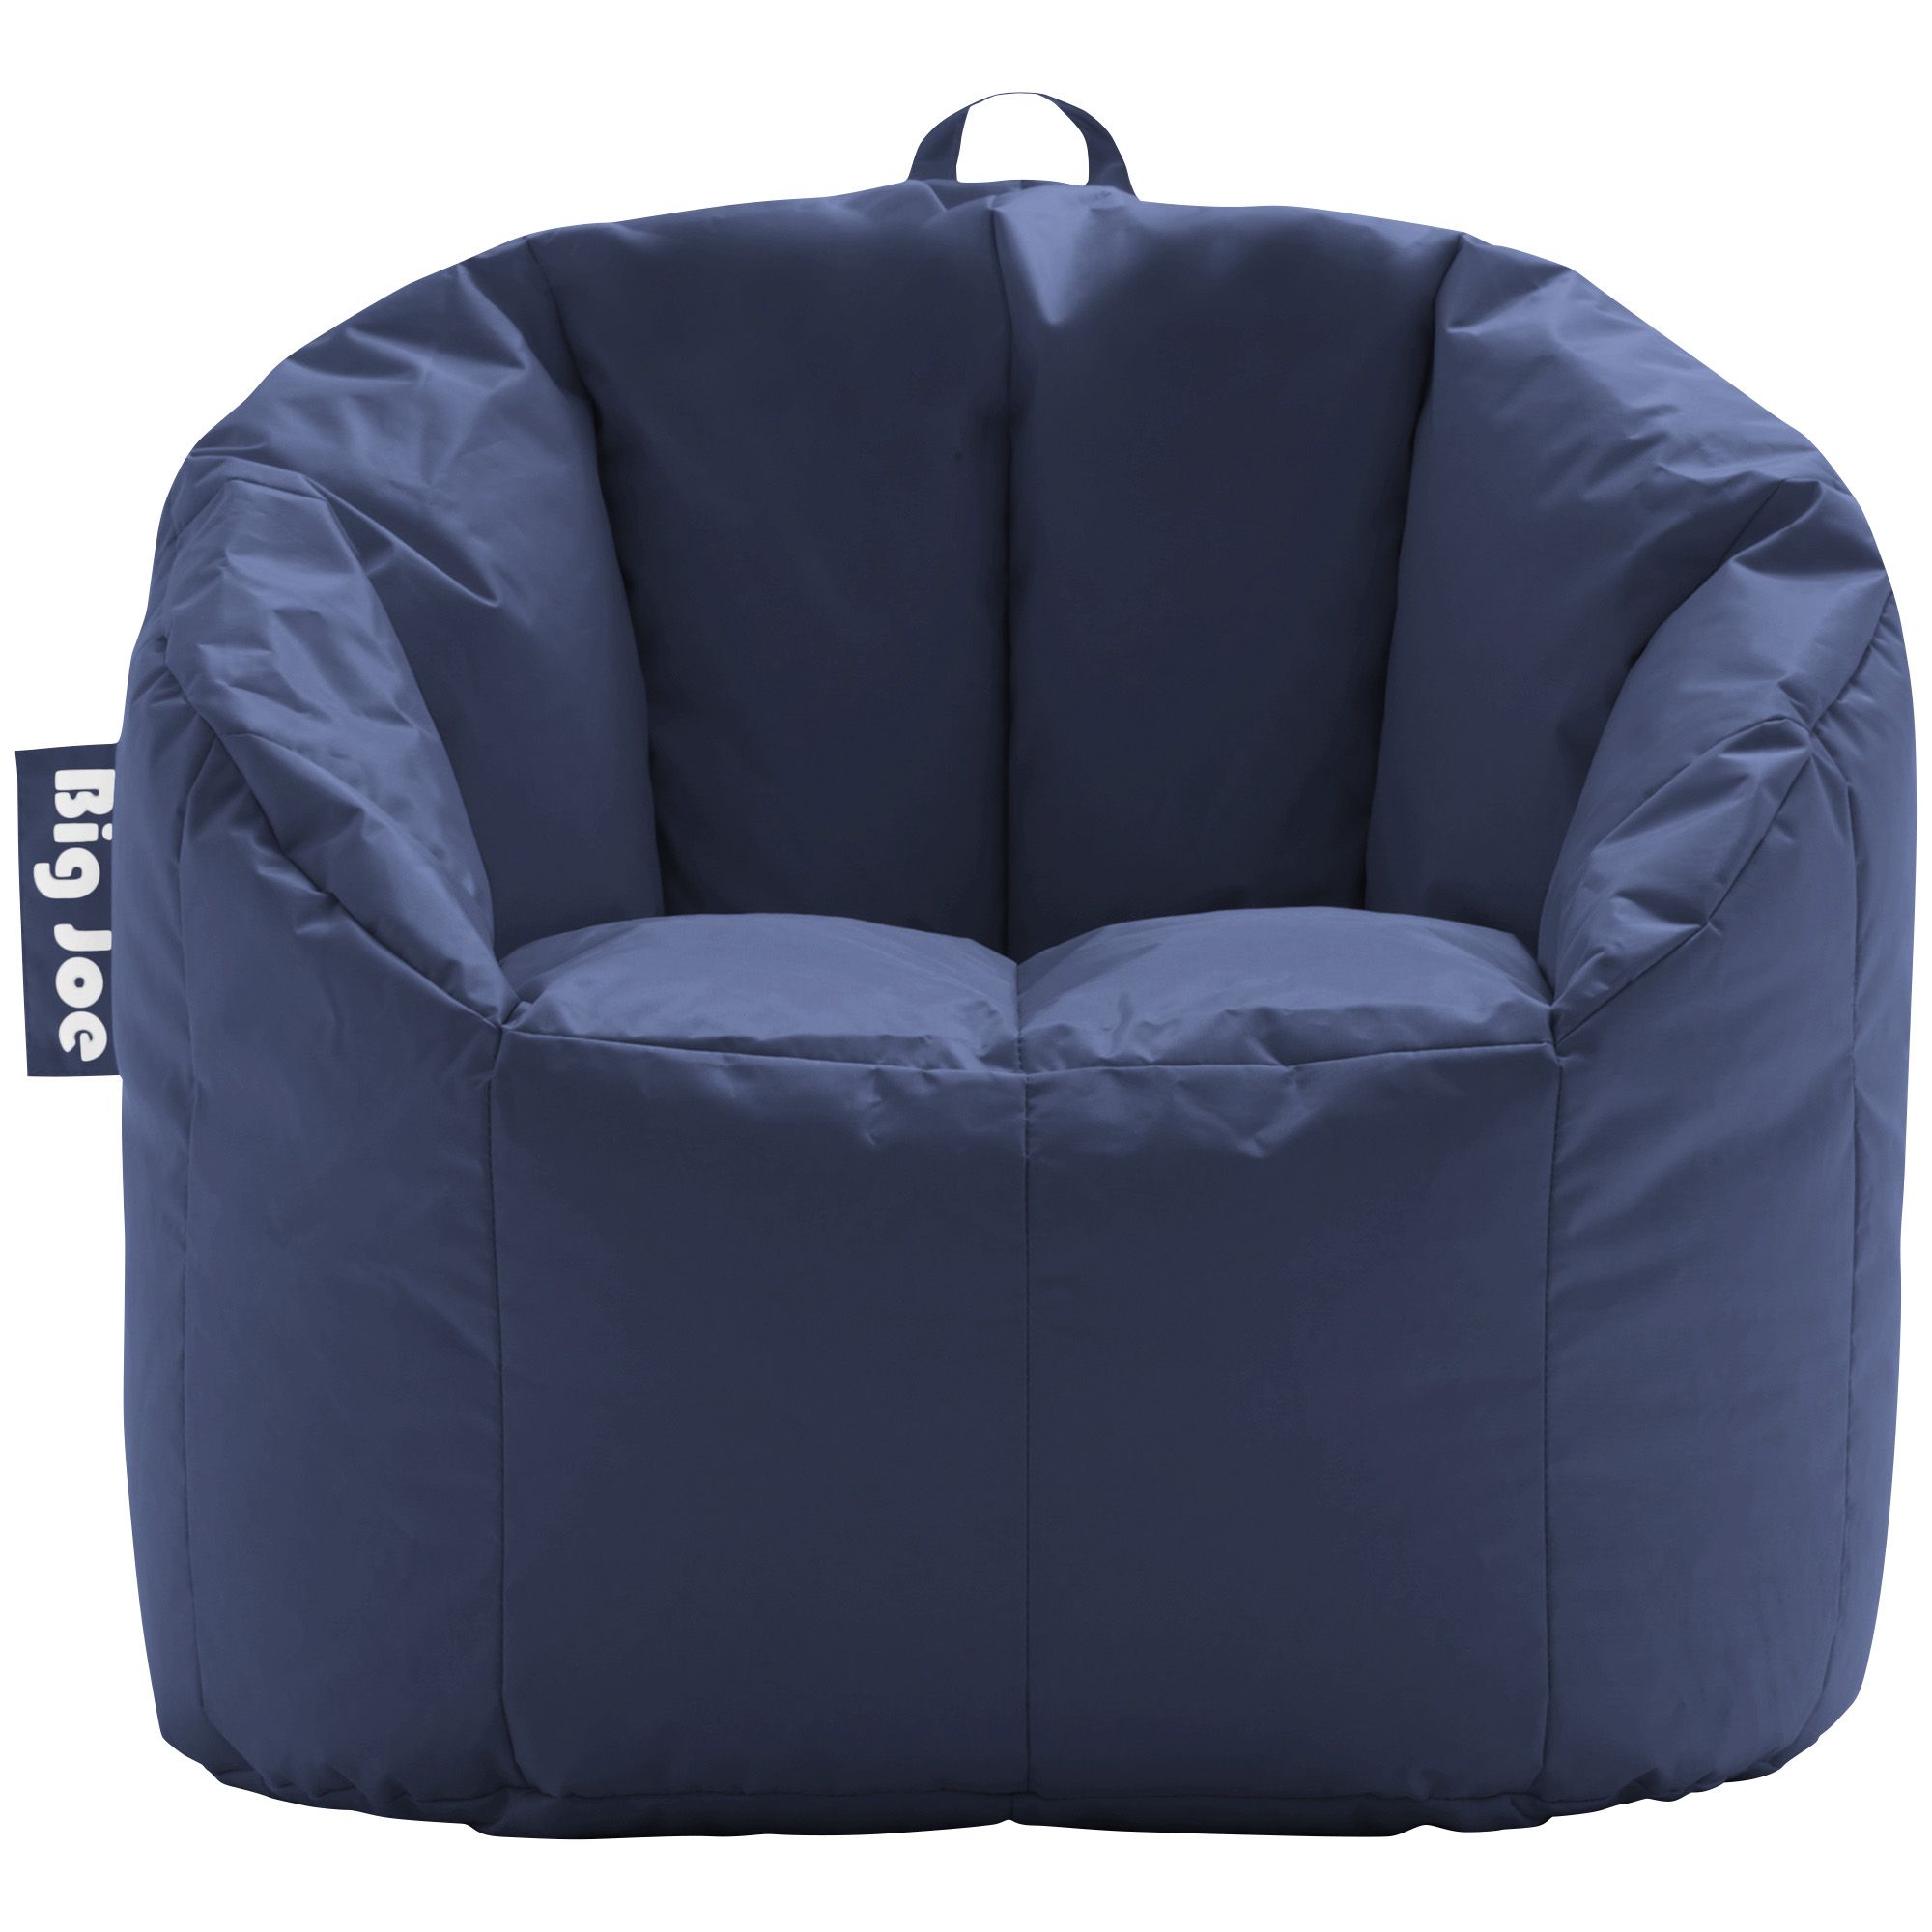 Fingerhut - Big Joe Imperial Lounge Bean Bag Chair